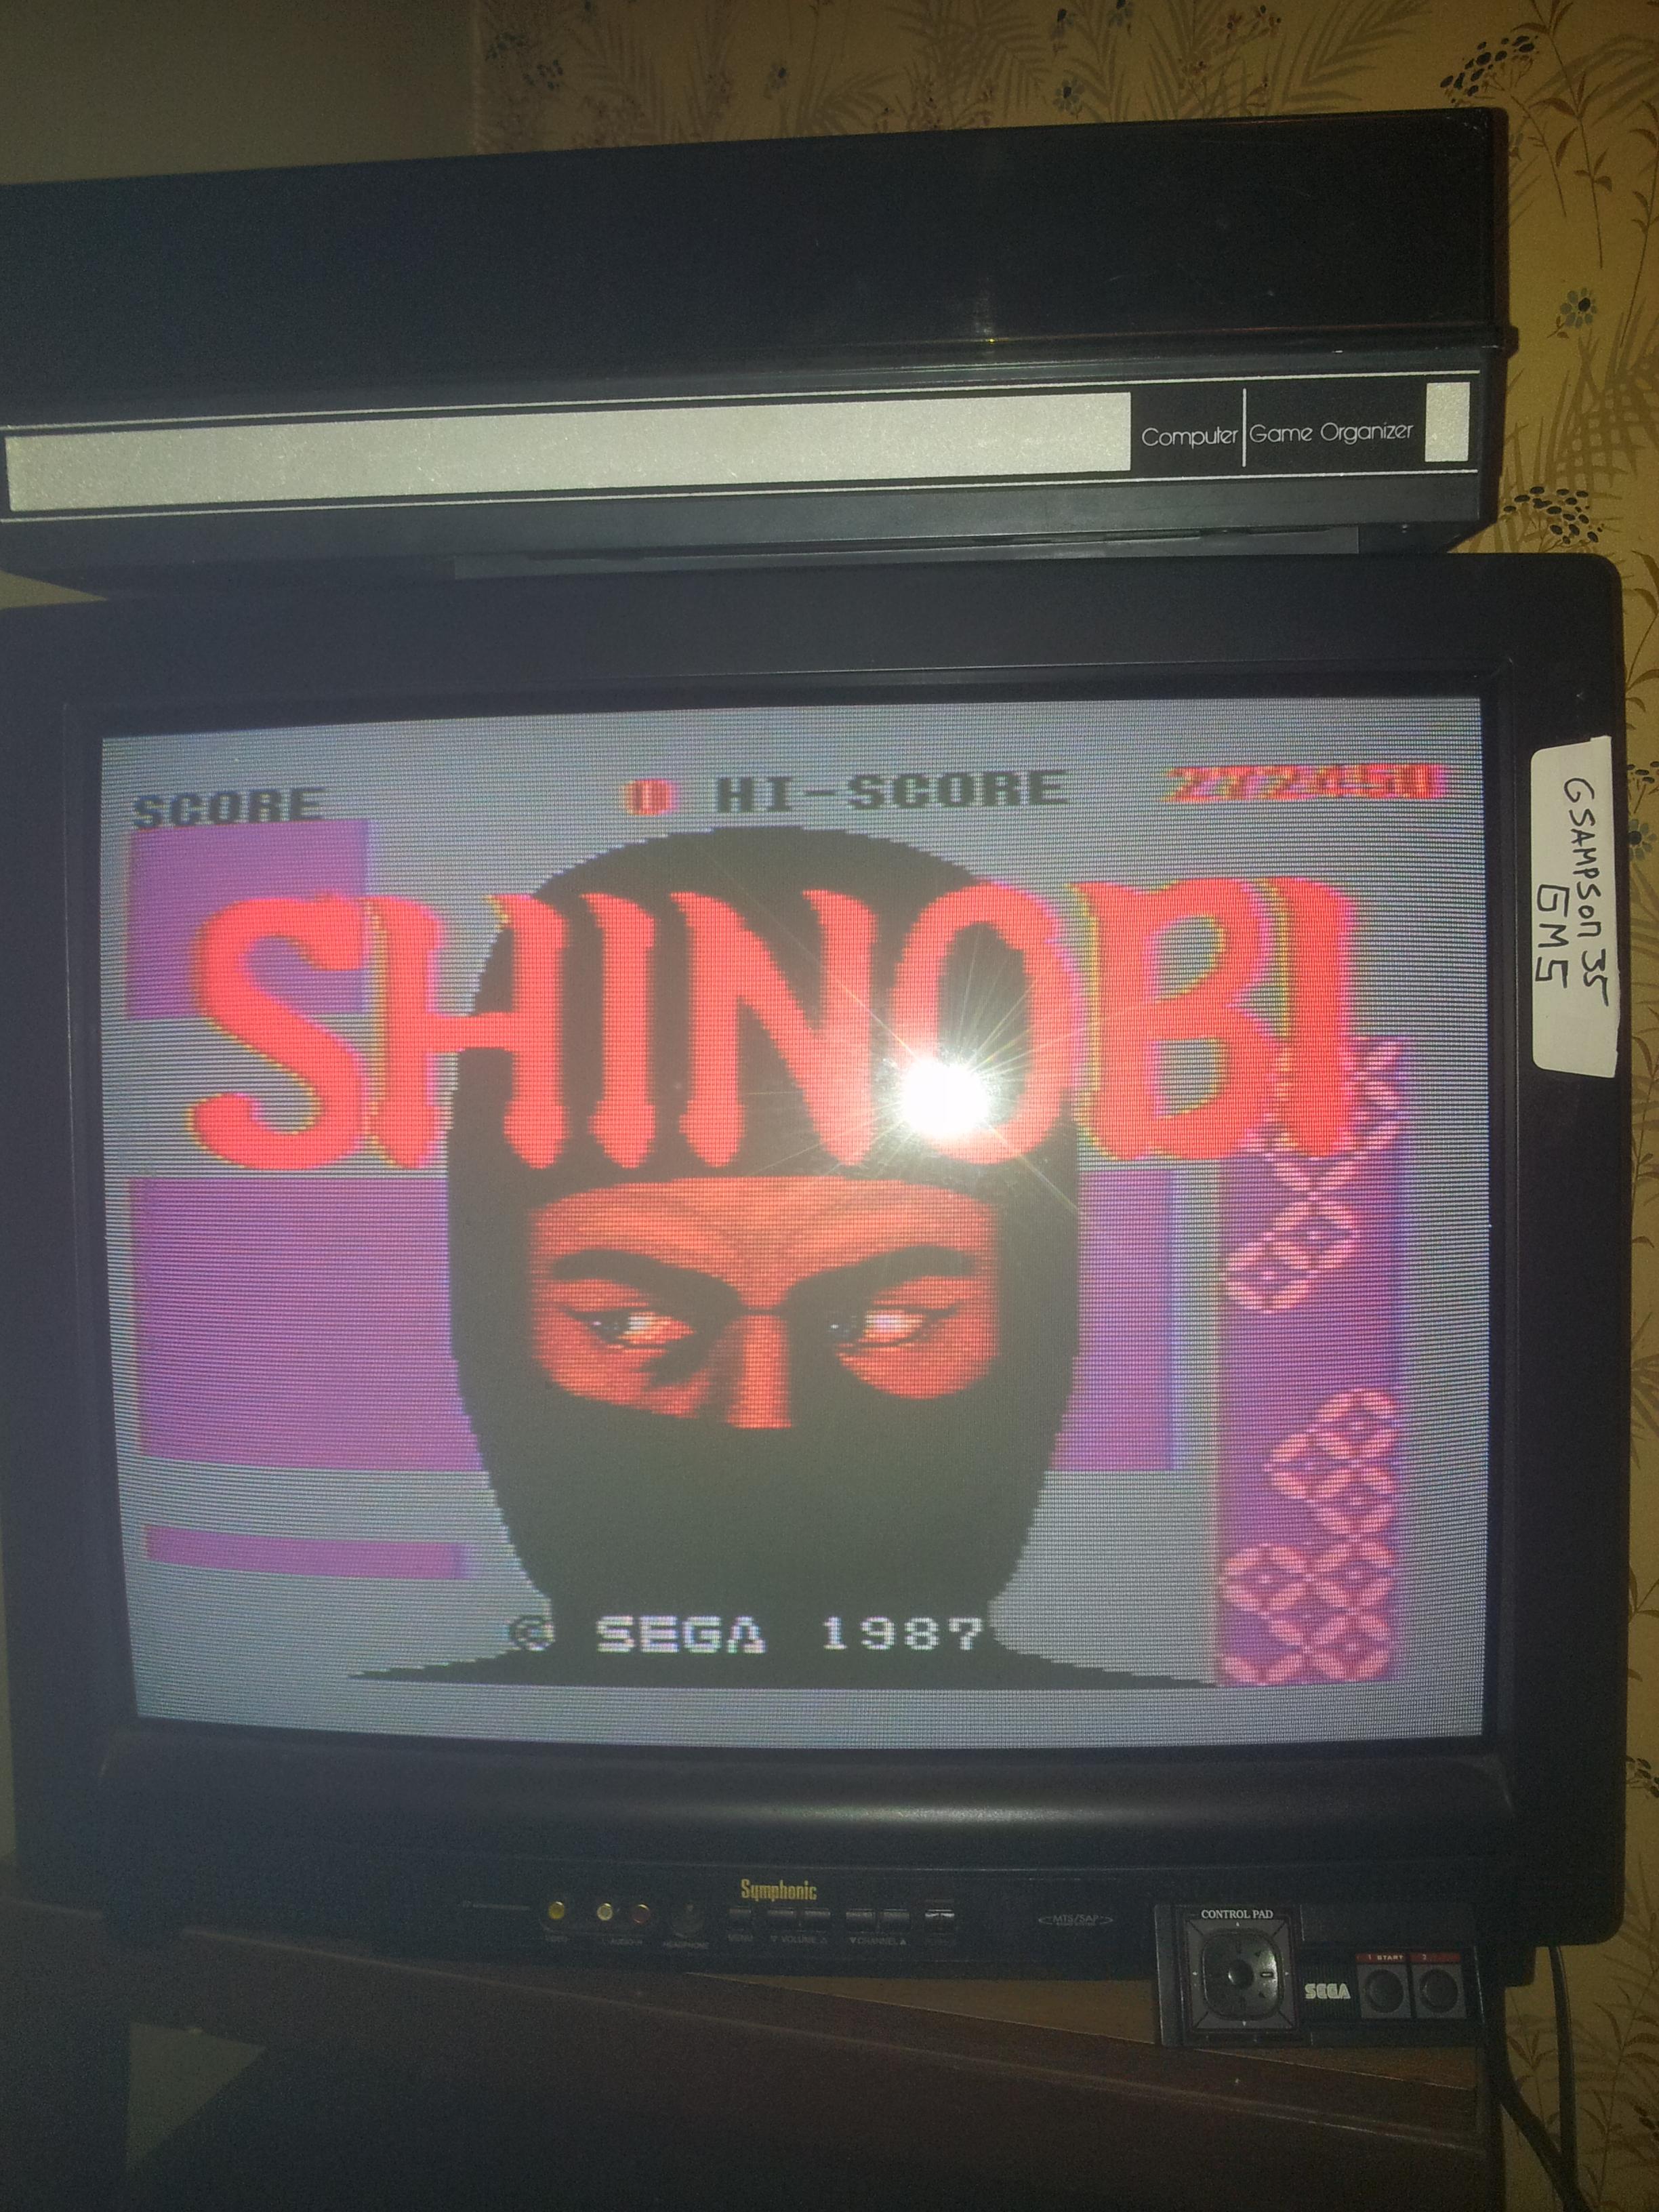 Shinobi 272,450 points